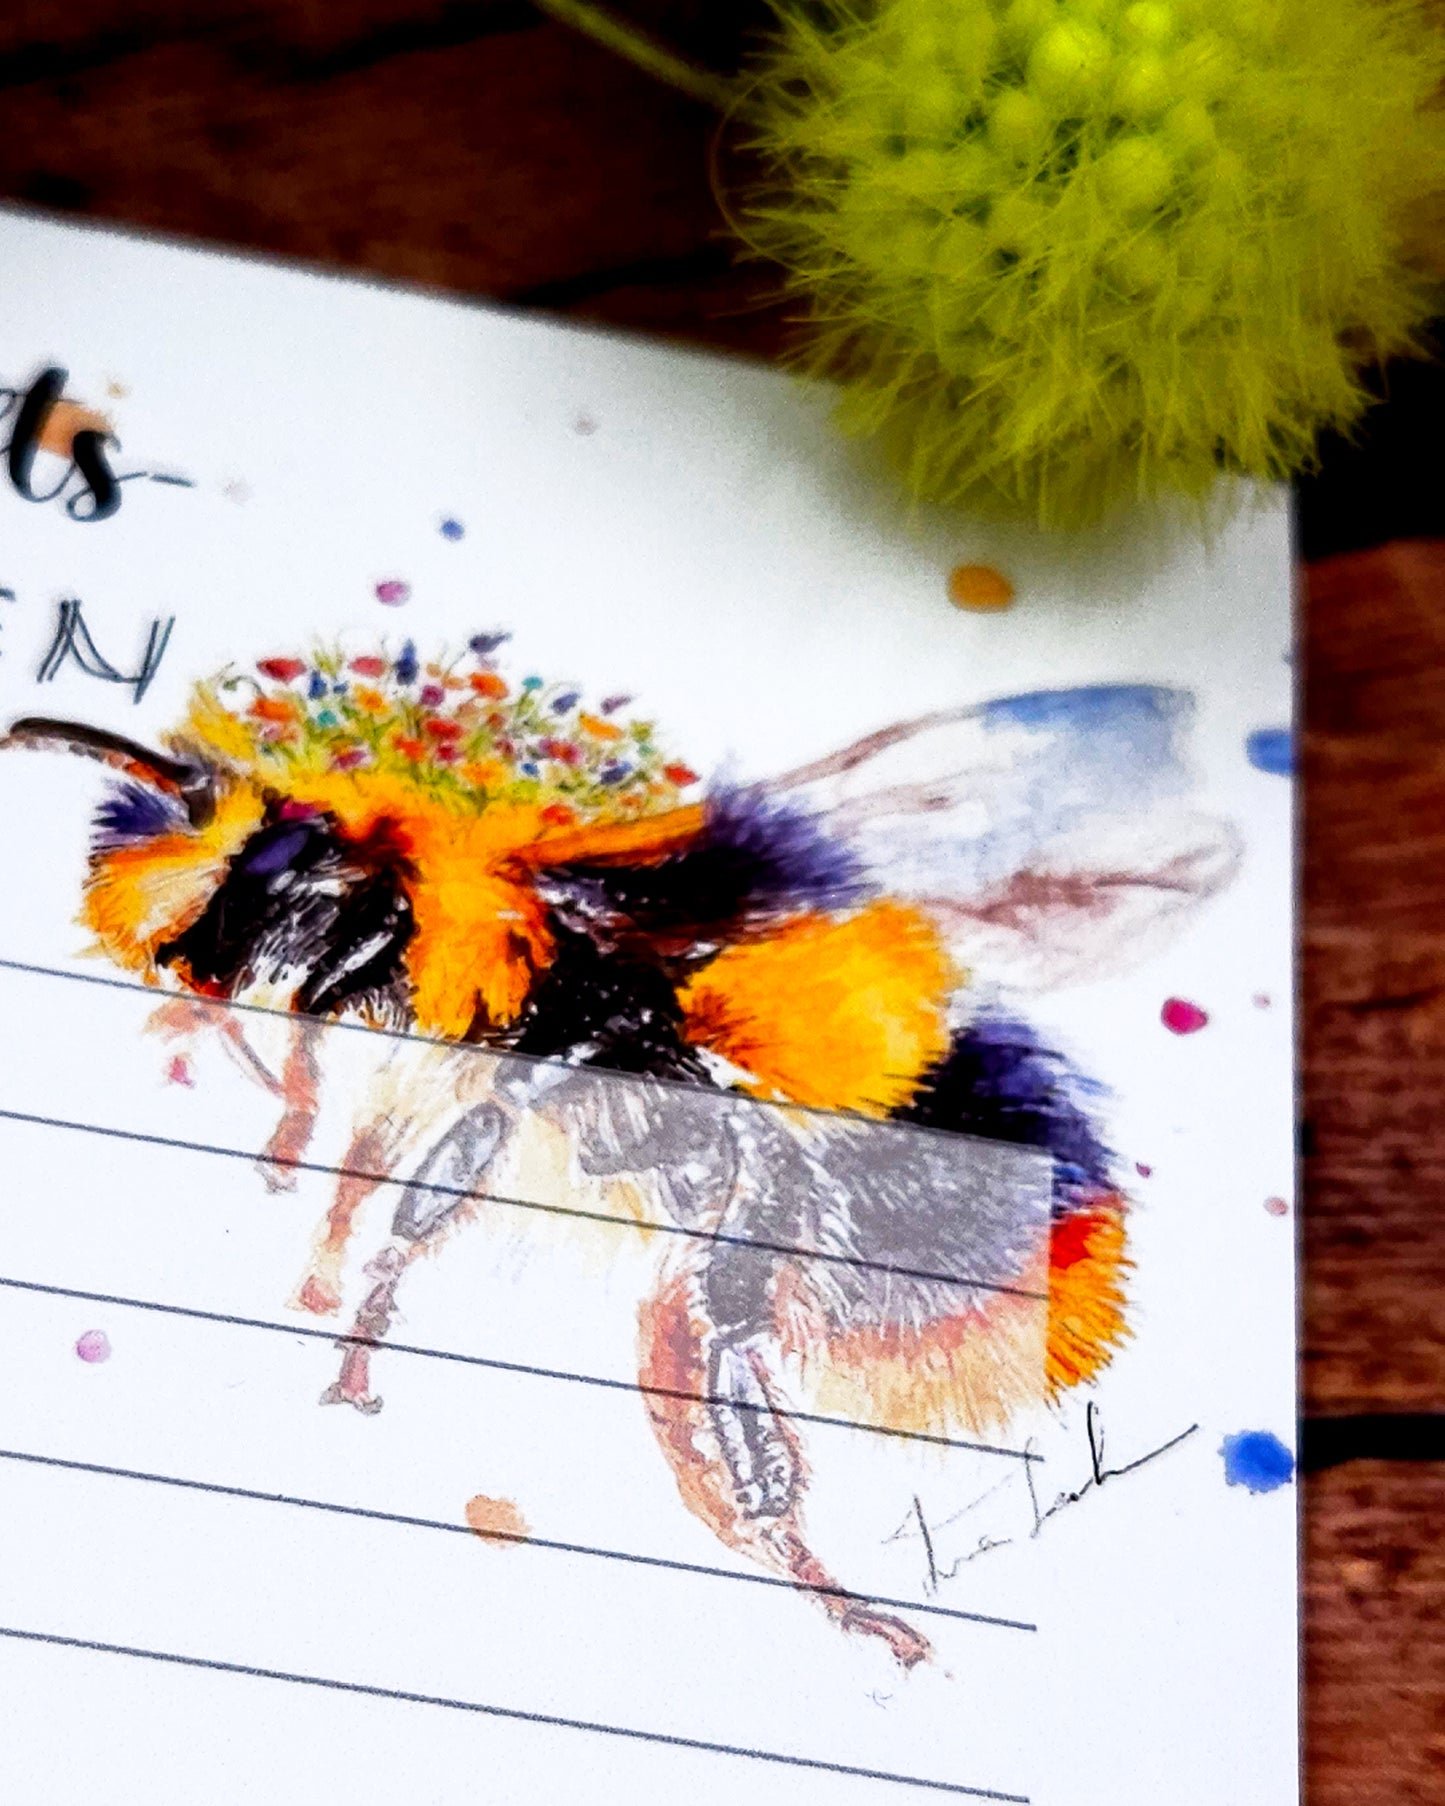 Notizblock - Zukunftsnotizen mit Biene und Lavendel